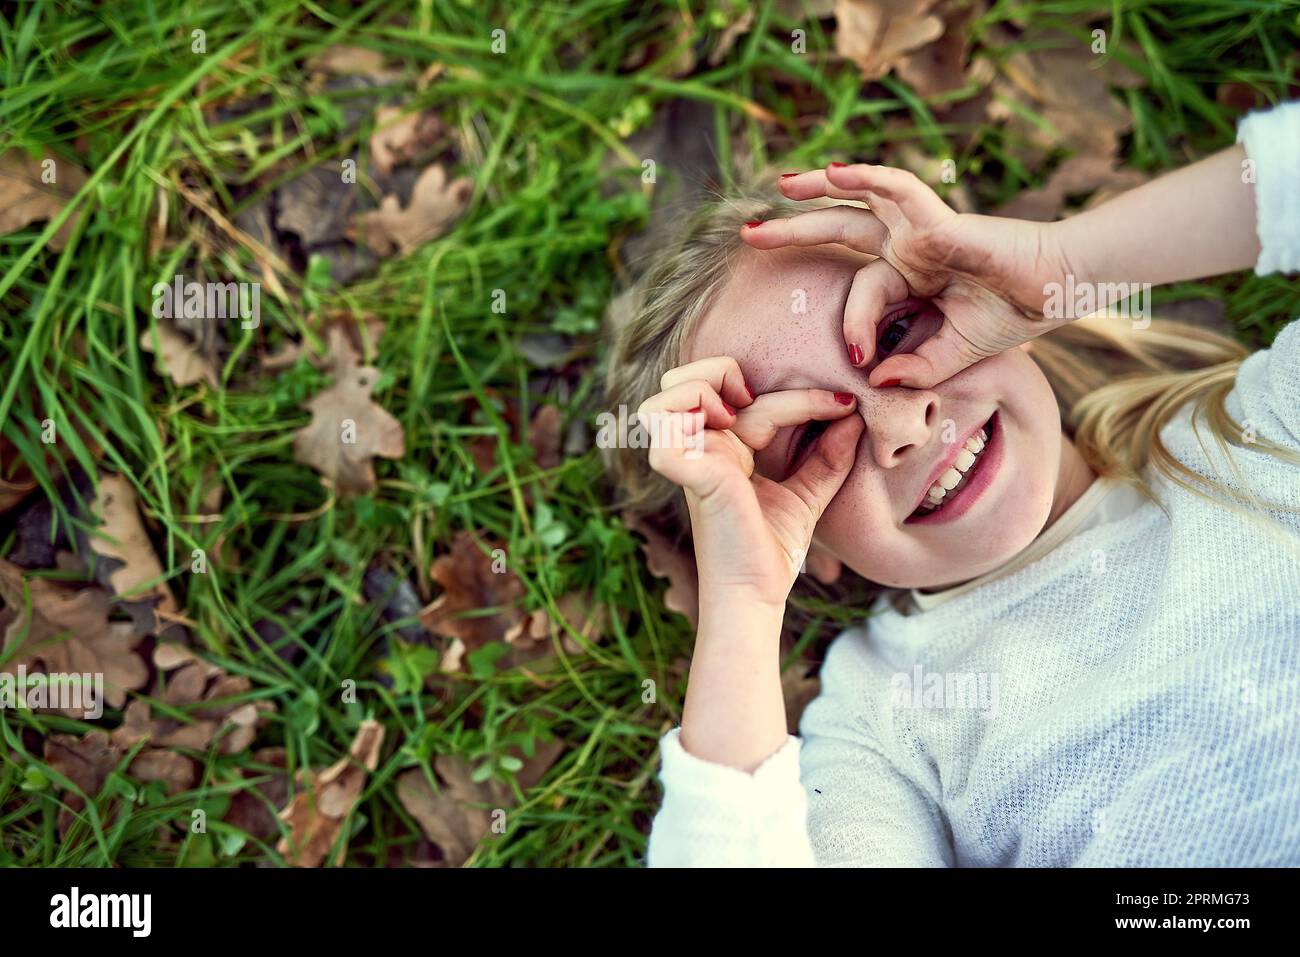 Il mondo è pieno di meraviglia attraverso gli occhi dei bambini. Ritratto di una giovane ragazza sdraiata sull'erba fuori. Foto Stock